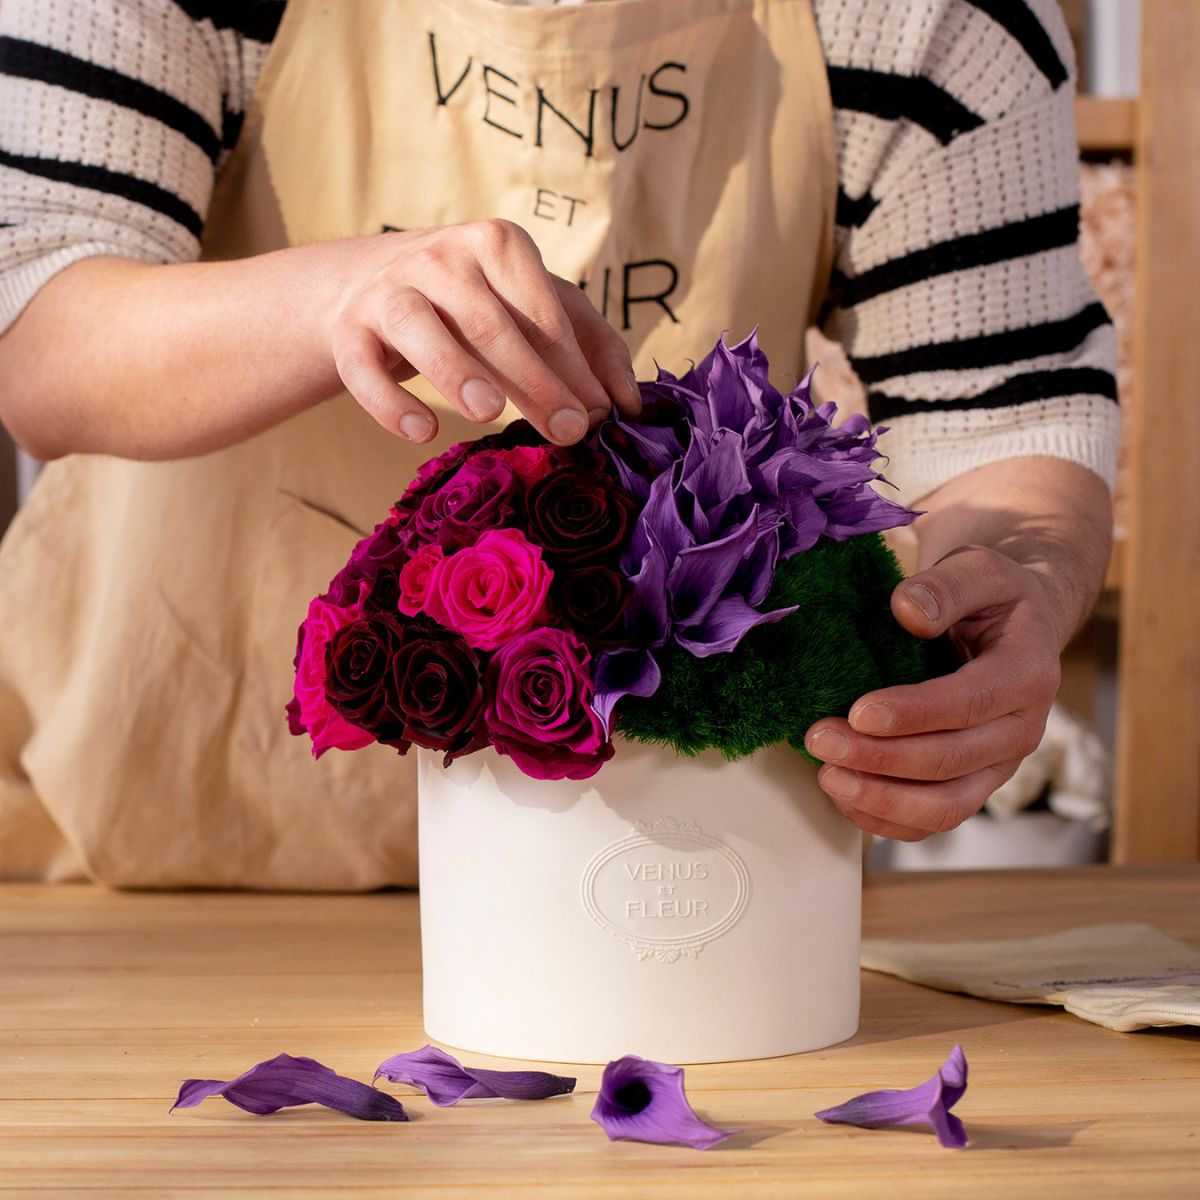 Discover Benefits of Flowers That Last a Year - Venus et Fleur®